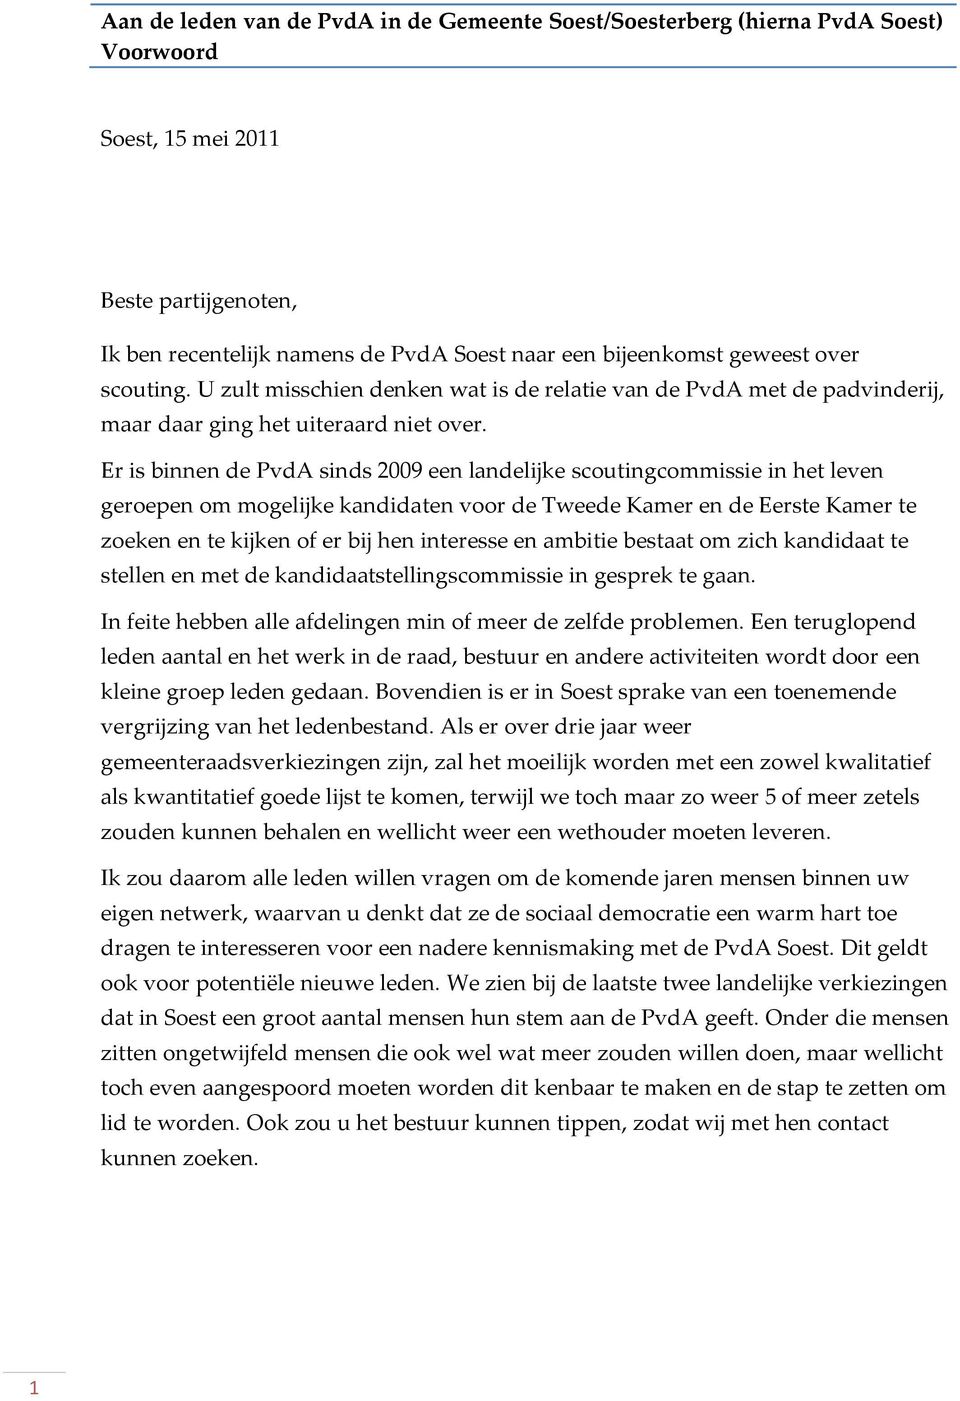 Er is binnen de PvdA sinds 2009 een landelijke scoutingcommissie in het leven geroepen om mogelijke kandidaten voor de Tweede Kamer en de Eerste Kamer te zoeken en te kijken of er bij hen interesse